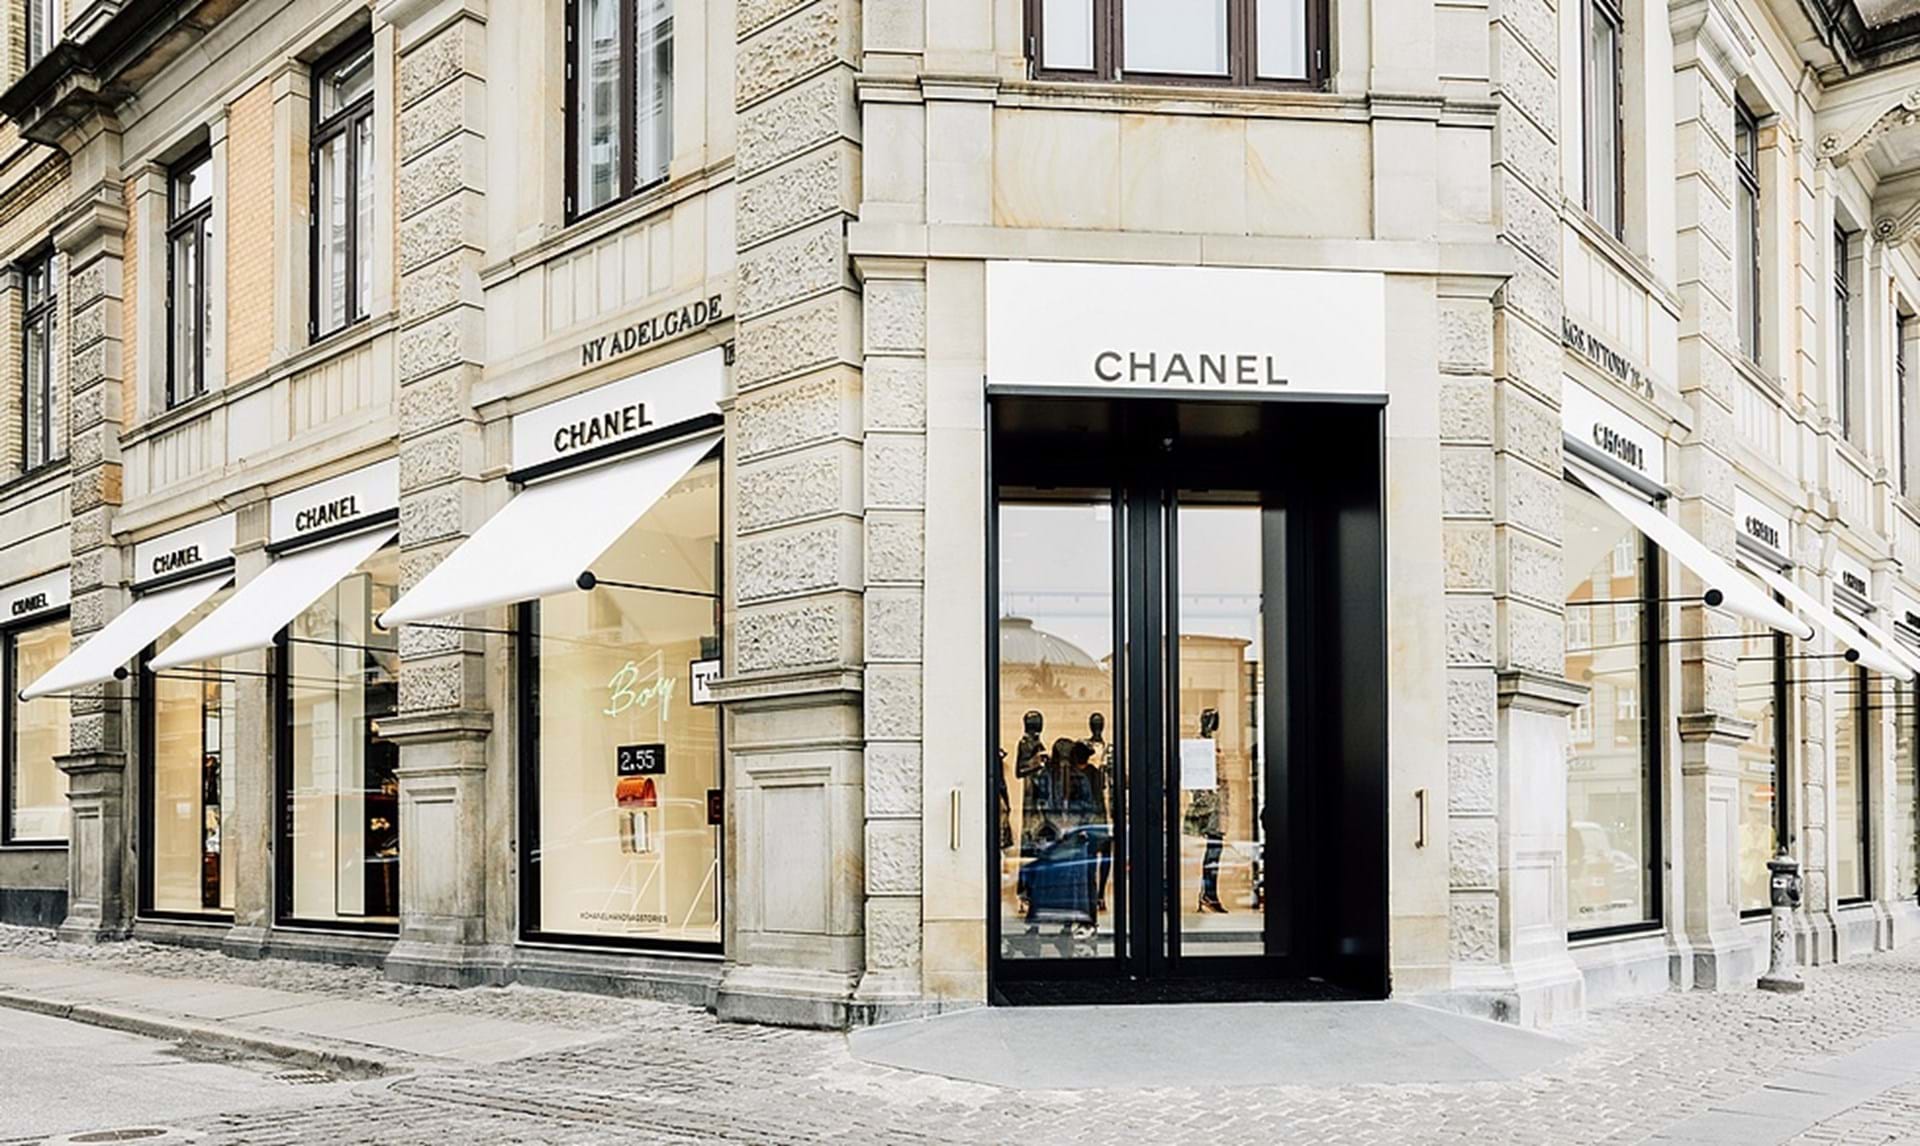 Se her, hvor Chanels ligger og, hvordan den ser ud -